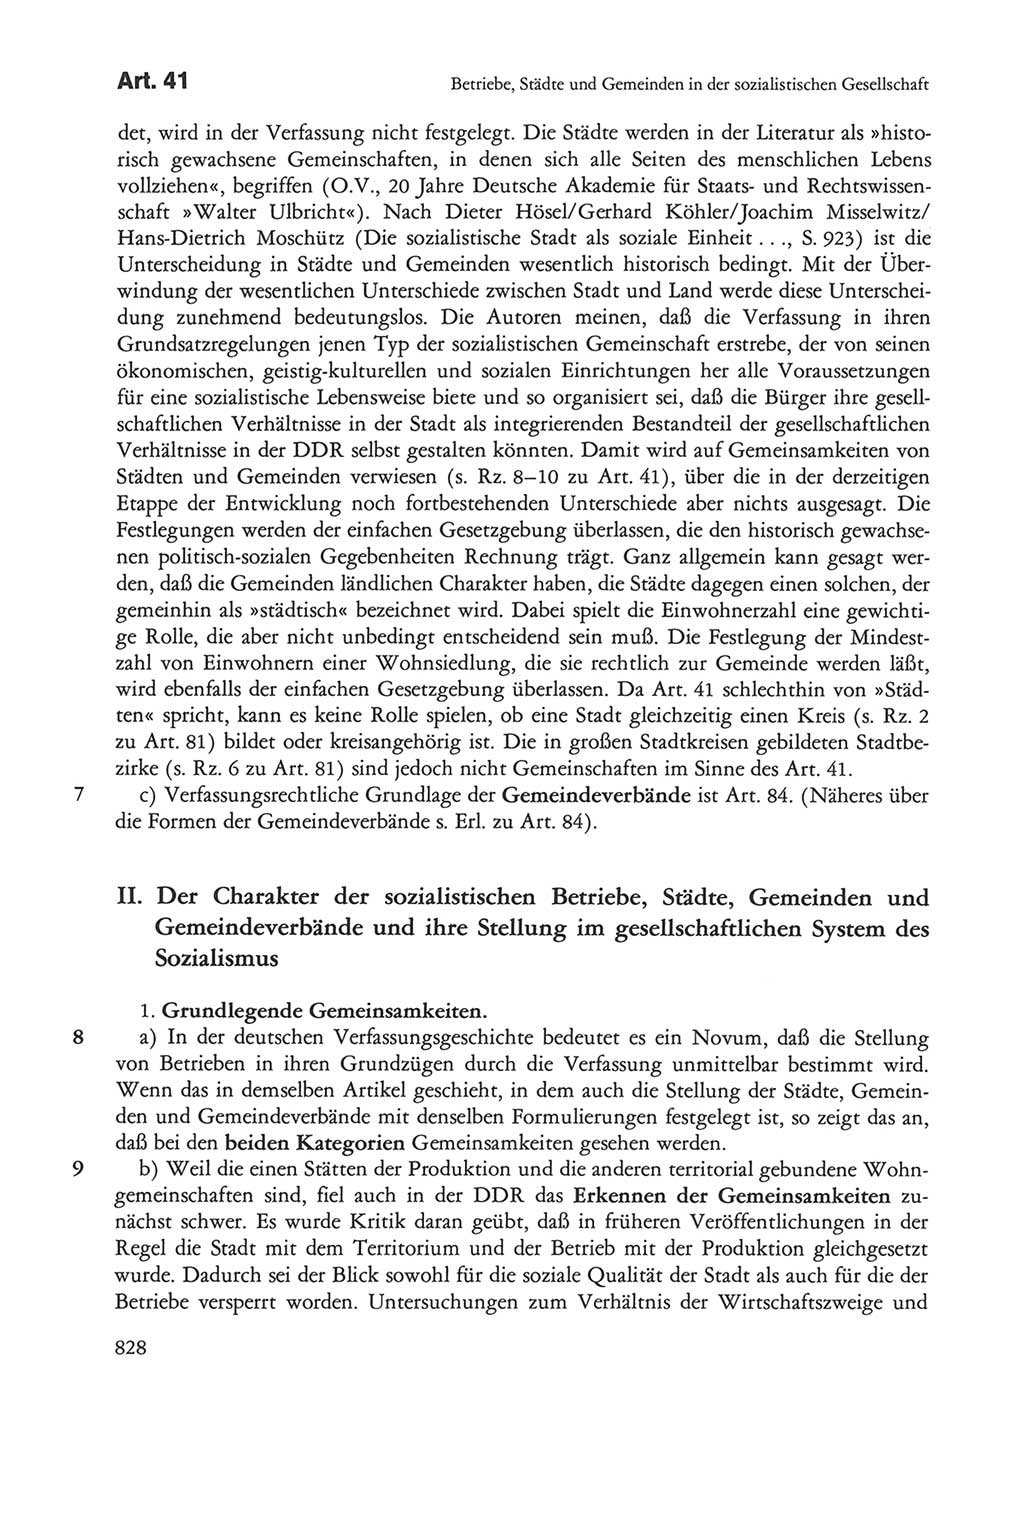 Die sozialistische Verfassung der Deutschen Demokratischen Republik (DDR), Kommentar mit einem Nachtrag 1997, Seite 828 (Soz. Verf. DDR Komm. Nachtr. 1997, S. 828)